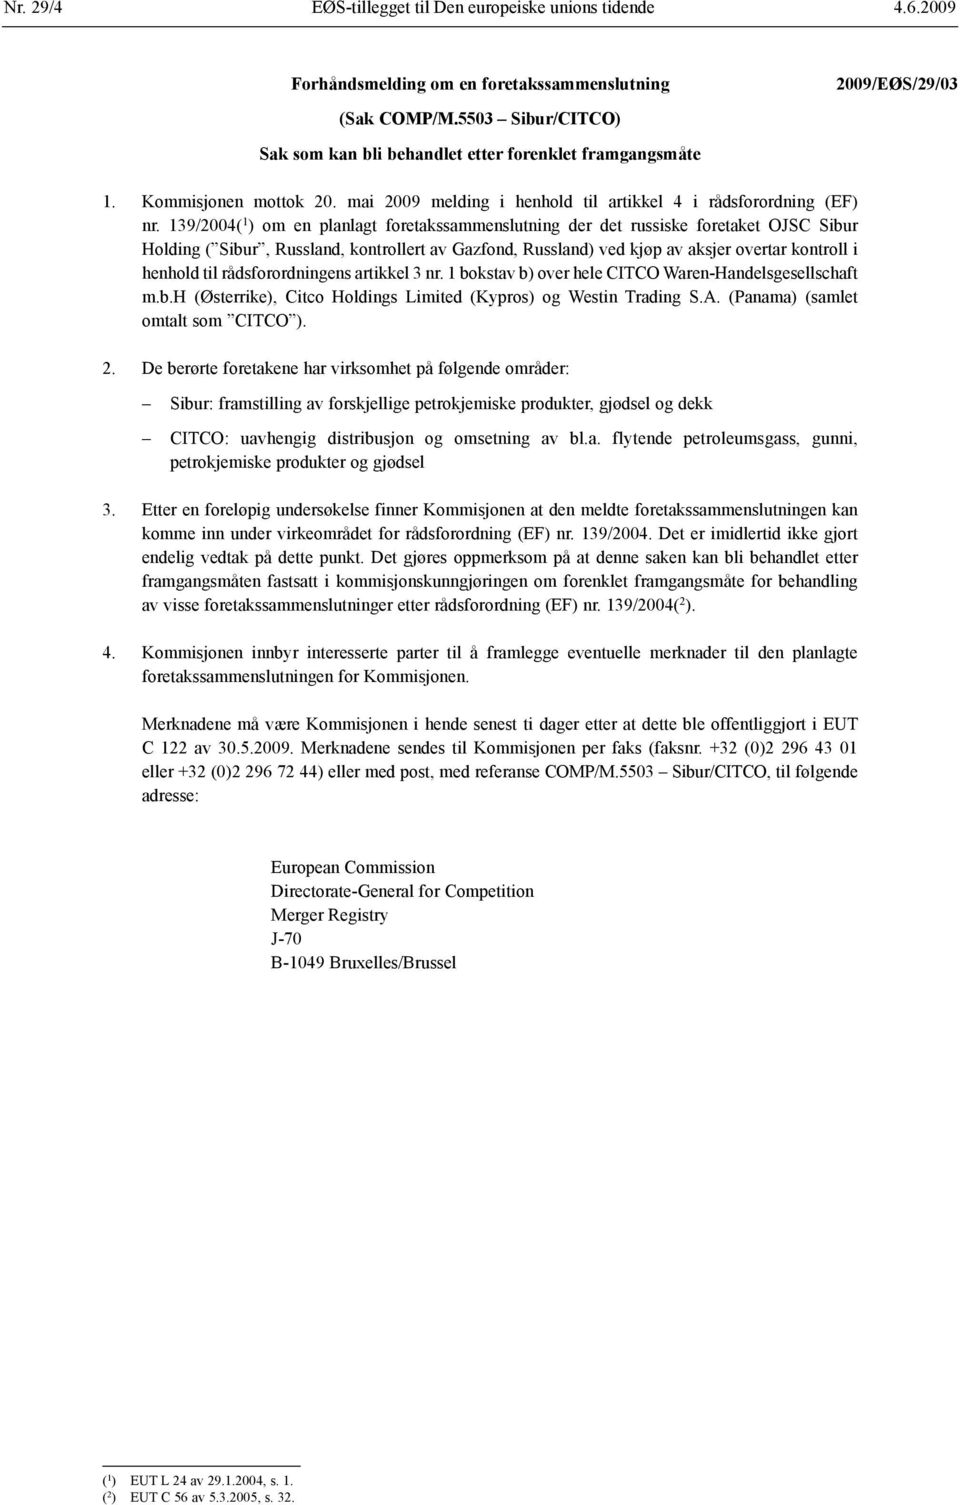 139/2004( 1 ) om en planlagt foretaks sammenslutning der det russiske foretaket OJSC Sibur Holding ( Sibur, Russland, kontrollert av Gazfond, Russland) ved kjøp av aksjer overtar kontroll i henhold